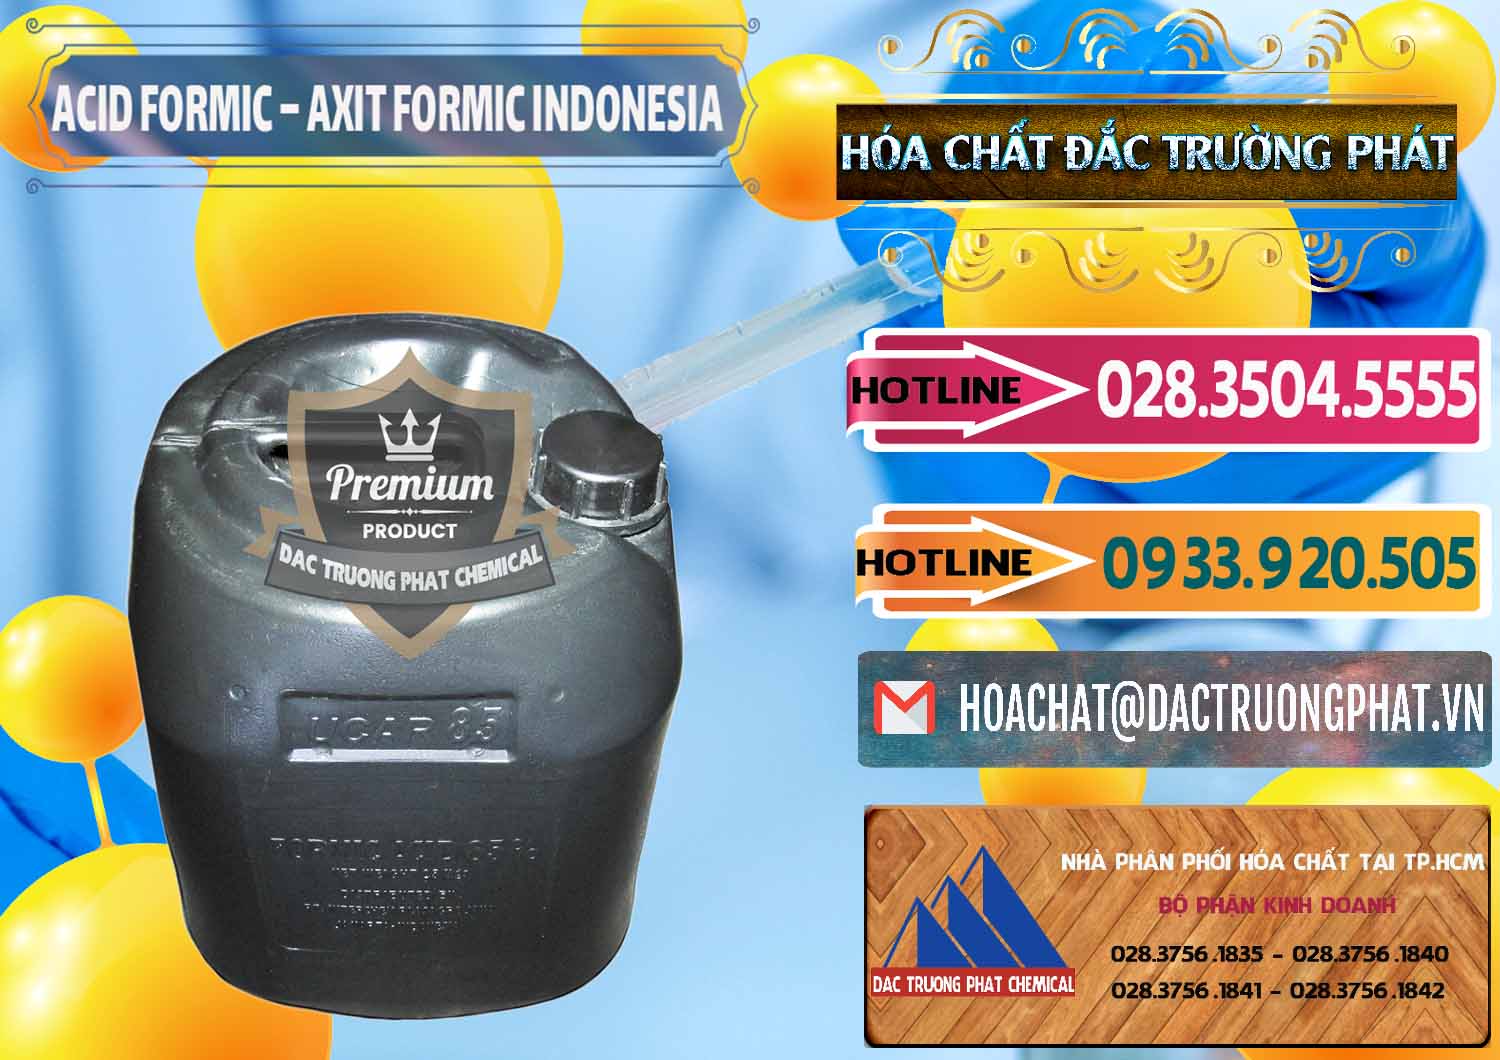 Cty chuyên bán - cung ứng Acid Formic - Axit Formic Indonesia - 0026 - Chuyên bán và phân phối hóa chất tại TP.HCM - dactruongphat.vn